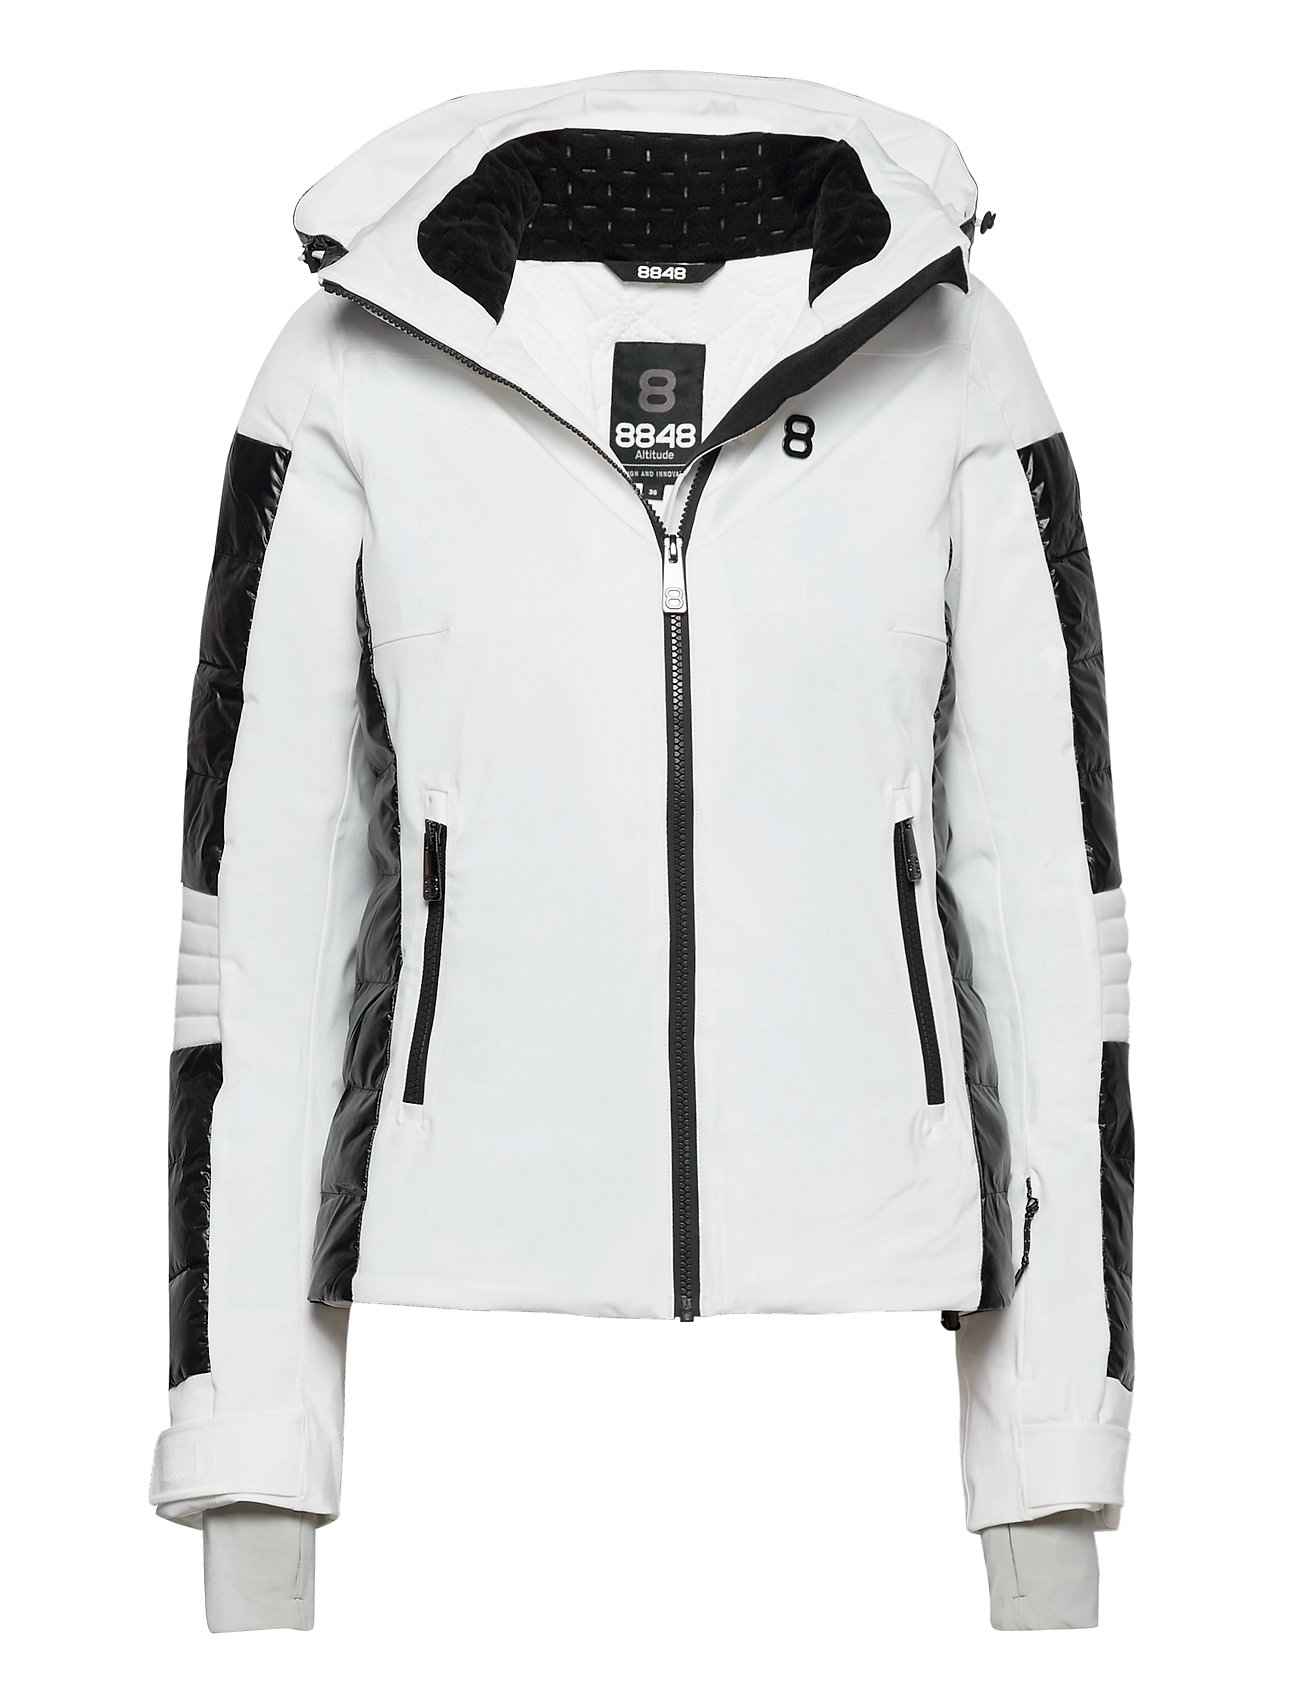 Aliza W Jacket Outerwear Sport Jackets Hvid 8848 Altitude jakker fra 8848 Altitude til i Hvid - Pashion.dk